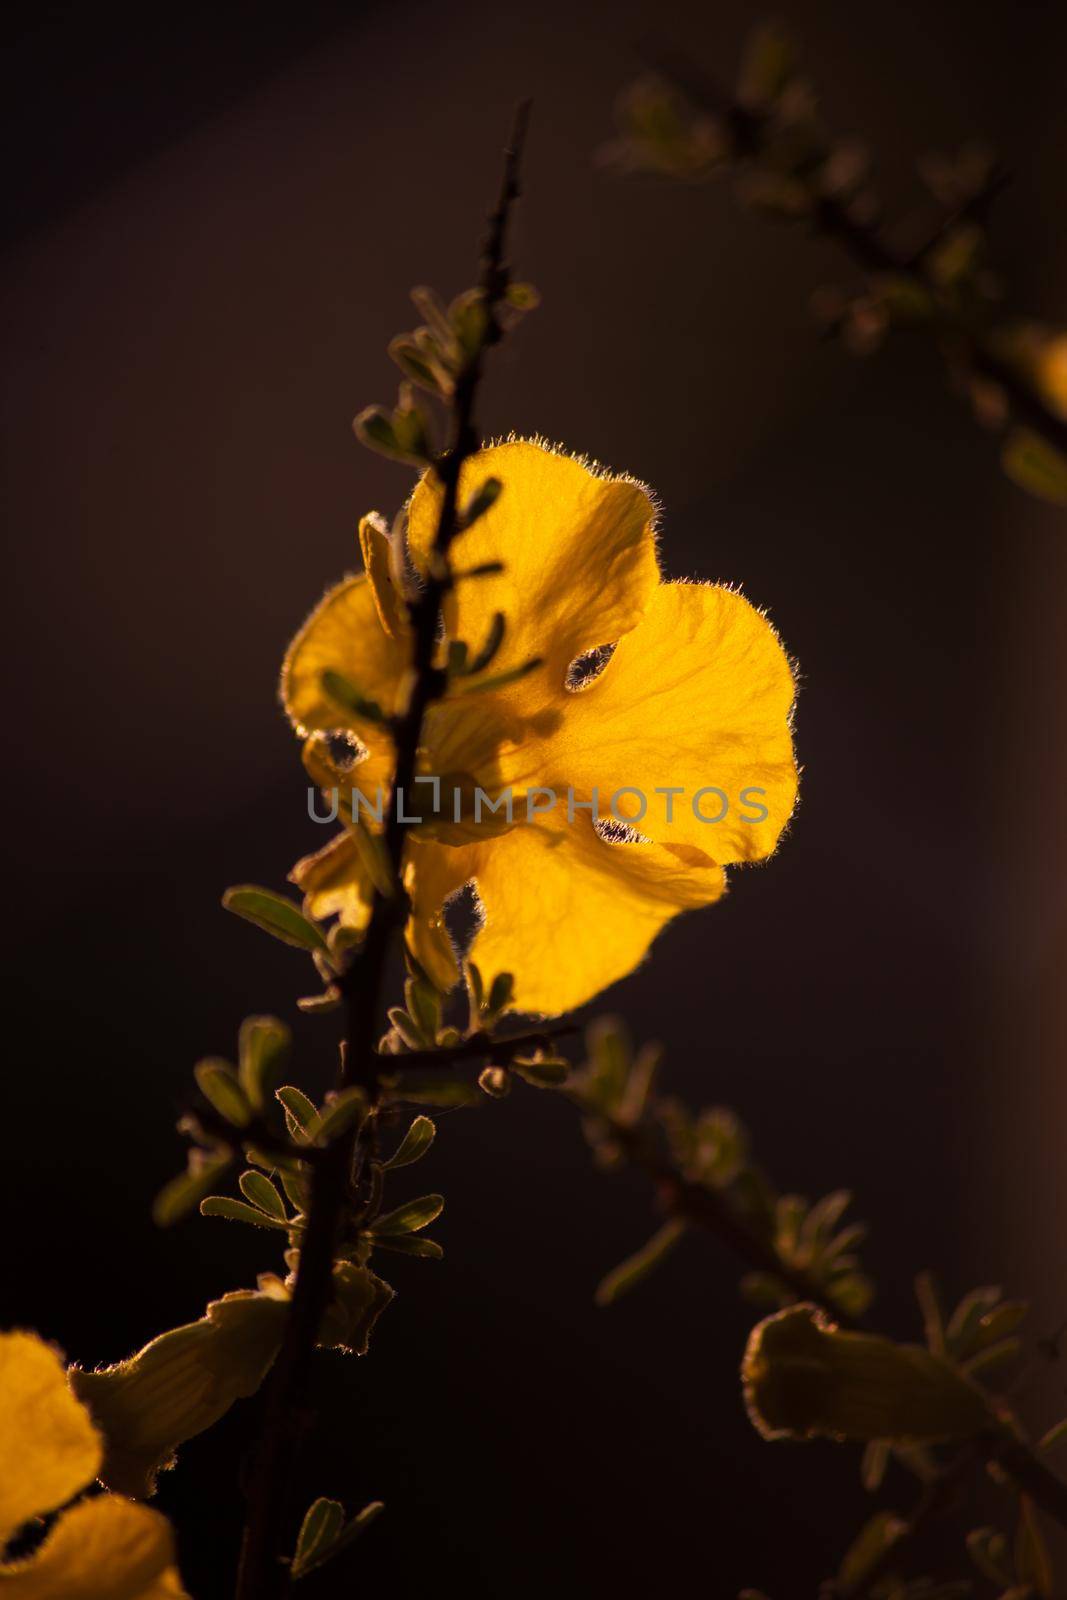 Flowers of the Karoo Gold Rhigozum obovatum Burch 14658 by kobus_peche